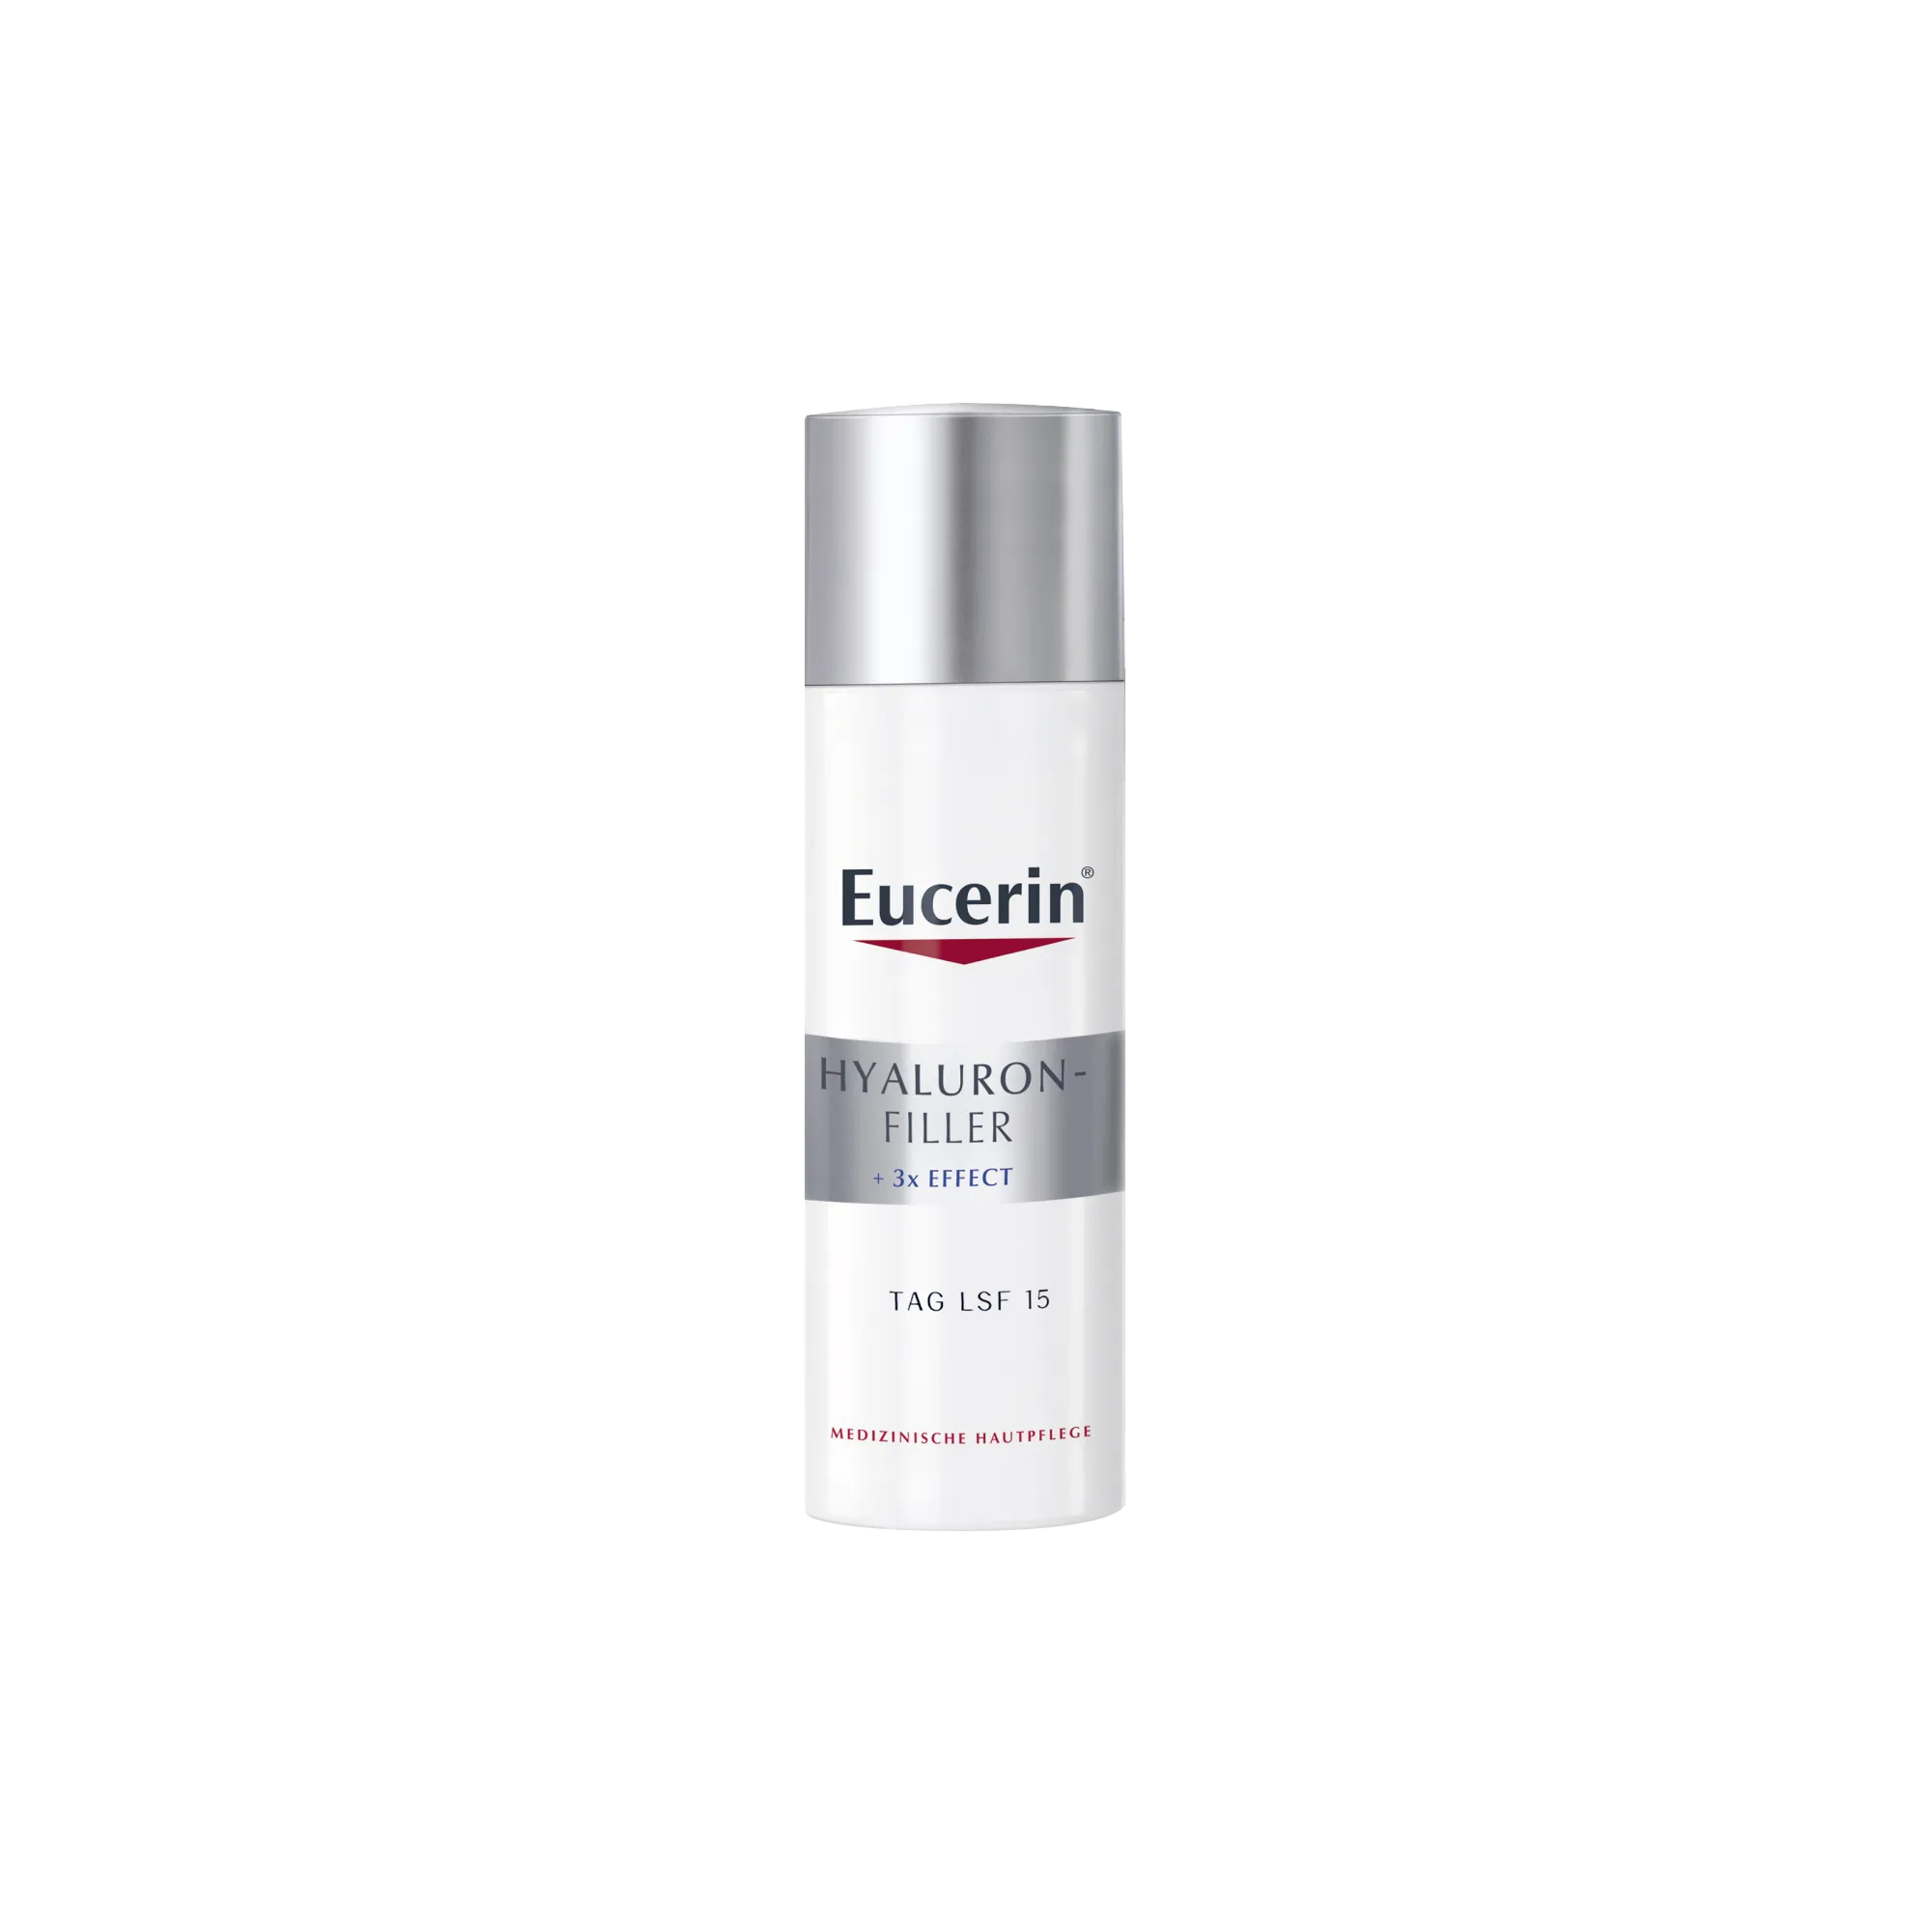 Eucerin Hyaluron-Filler przeciwzmarszczkowy krem na dzień do skóry mieszanej SPF 15, 50 ml 